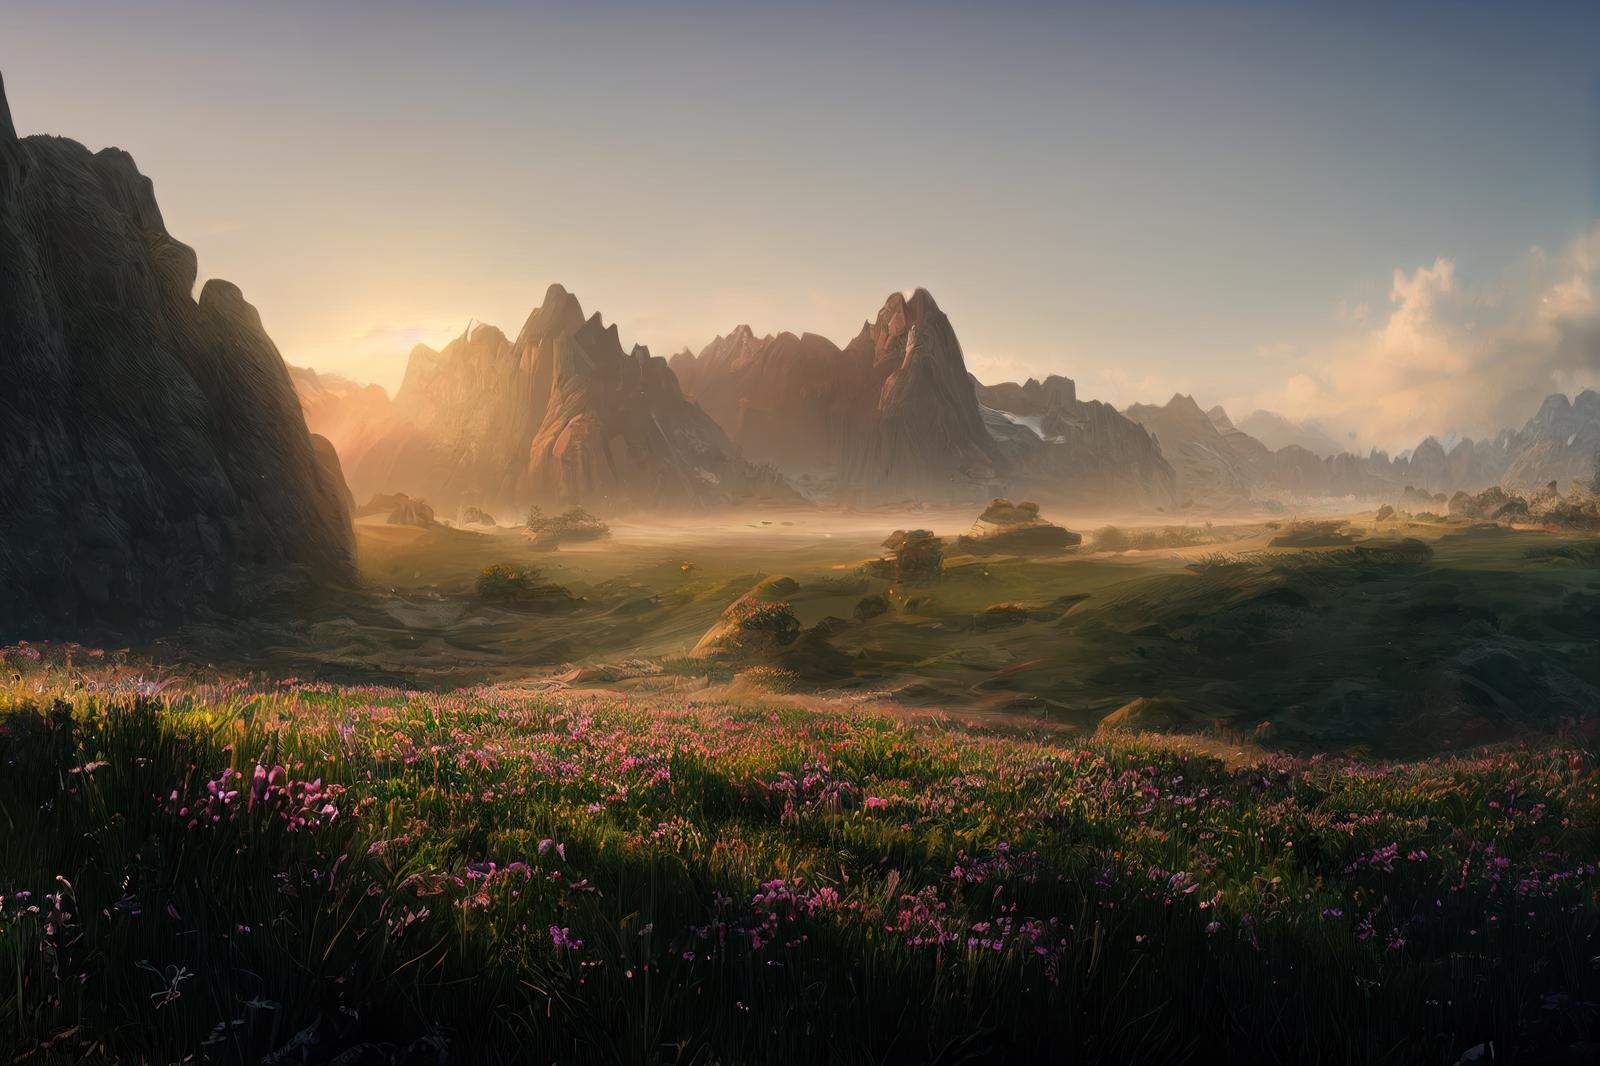 「朝靄と草花と朝焼けの静寂」の写真